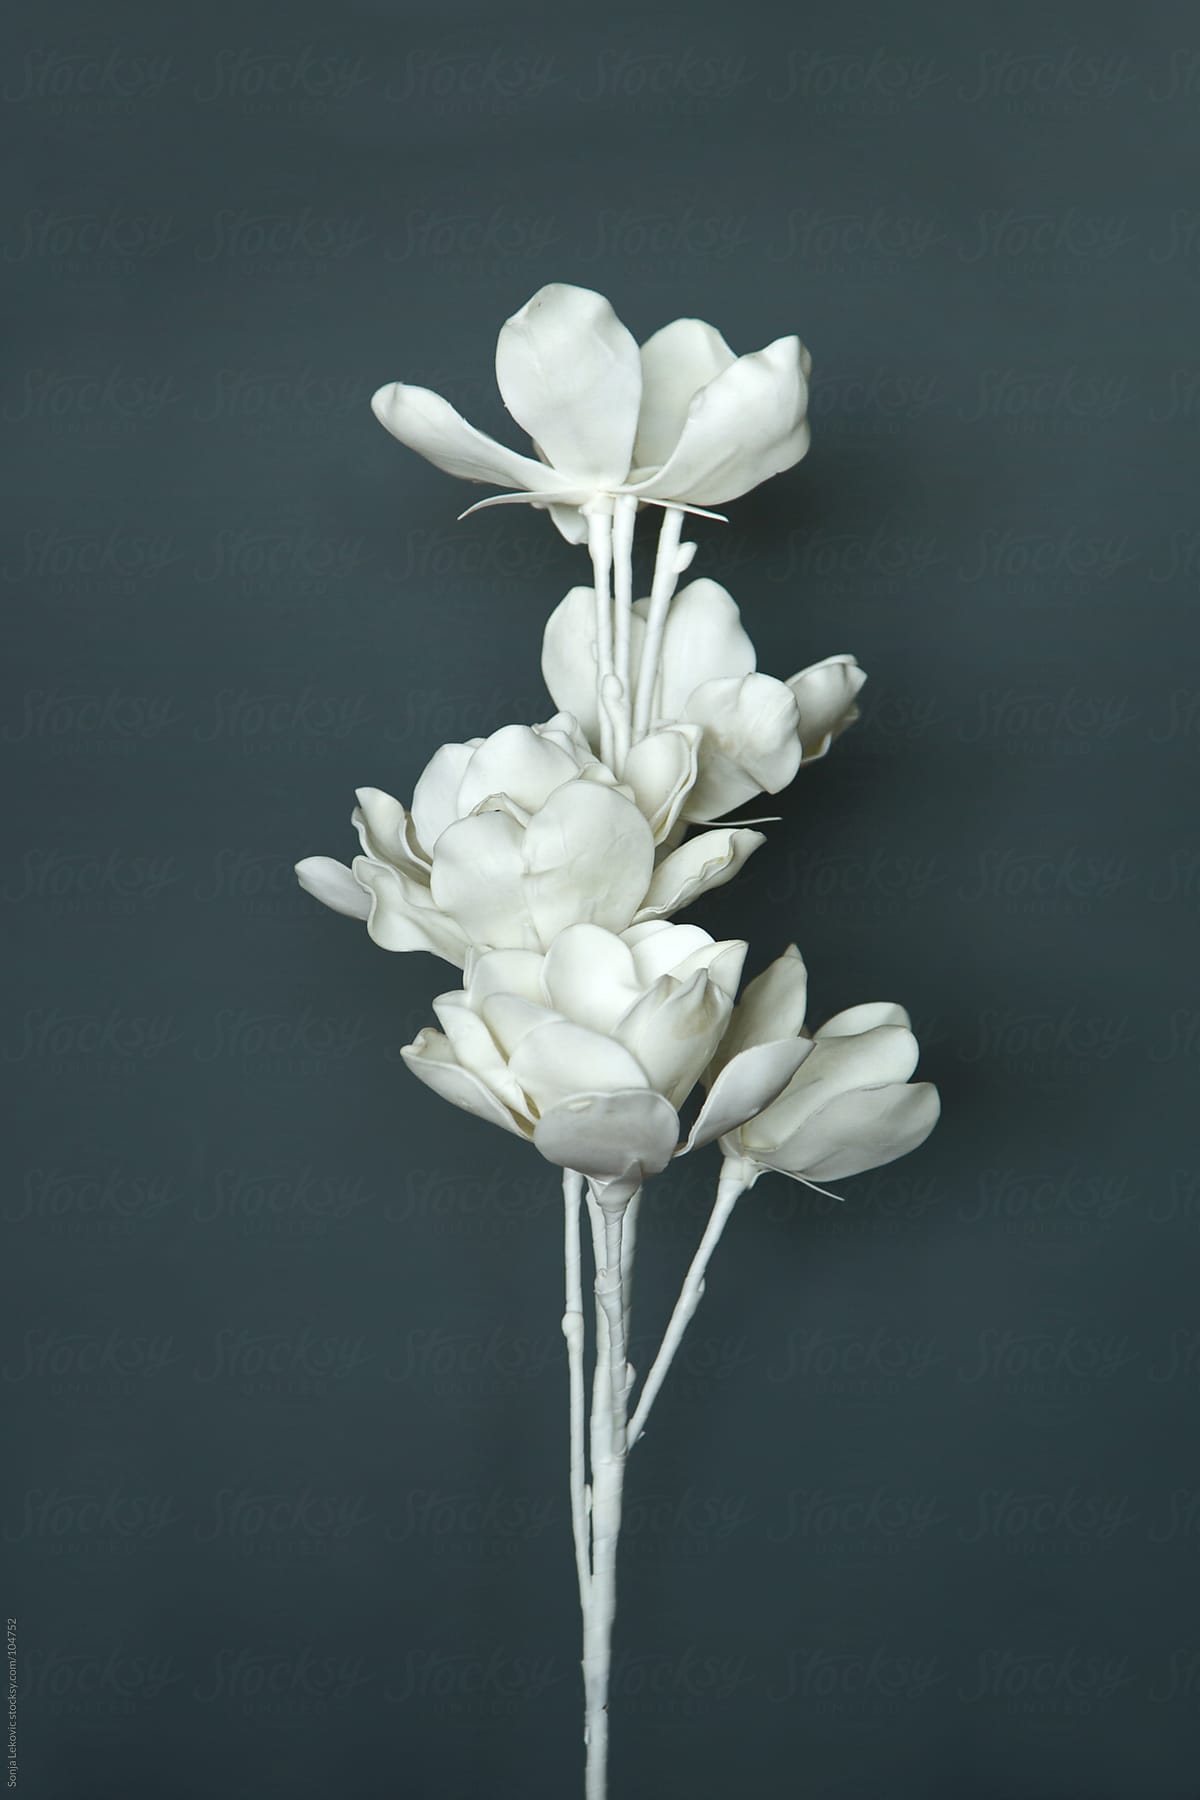 White Flower On A Dark Background